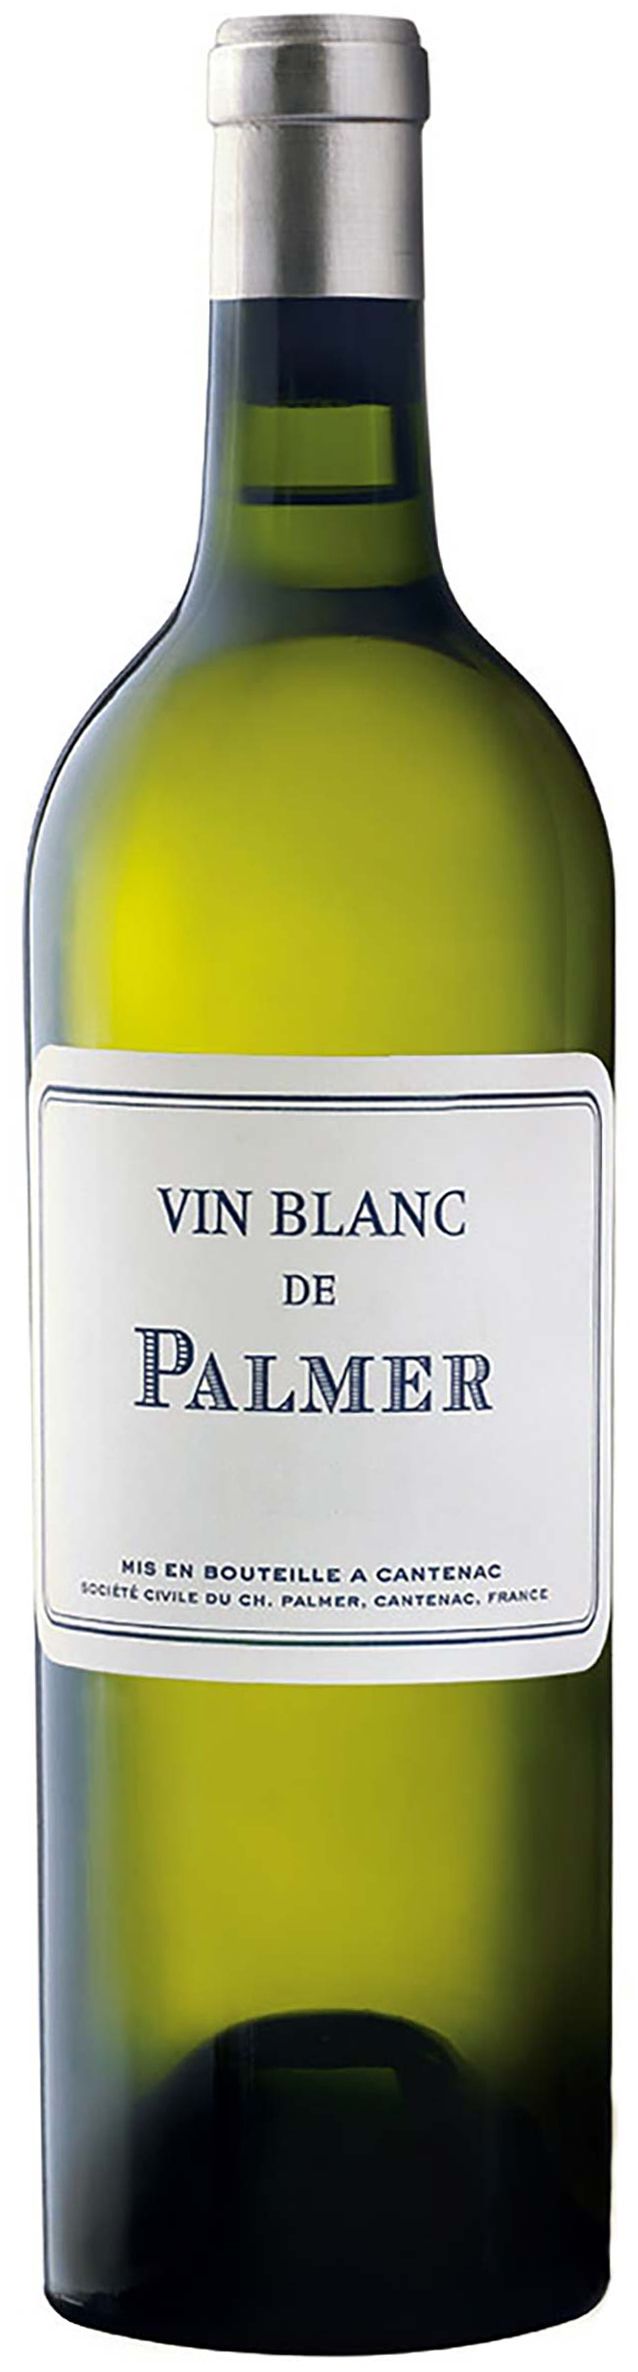 Chateau Palmer, Vin Blanc De Palmer, 2012